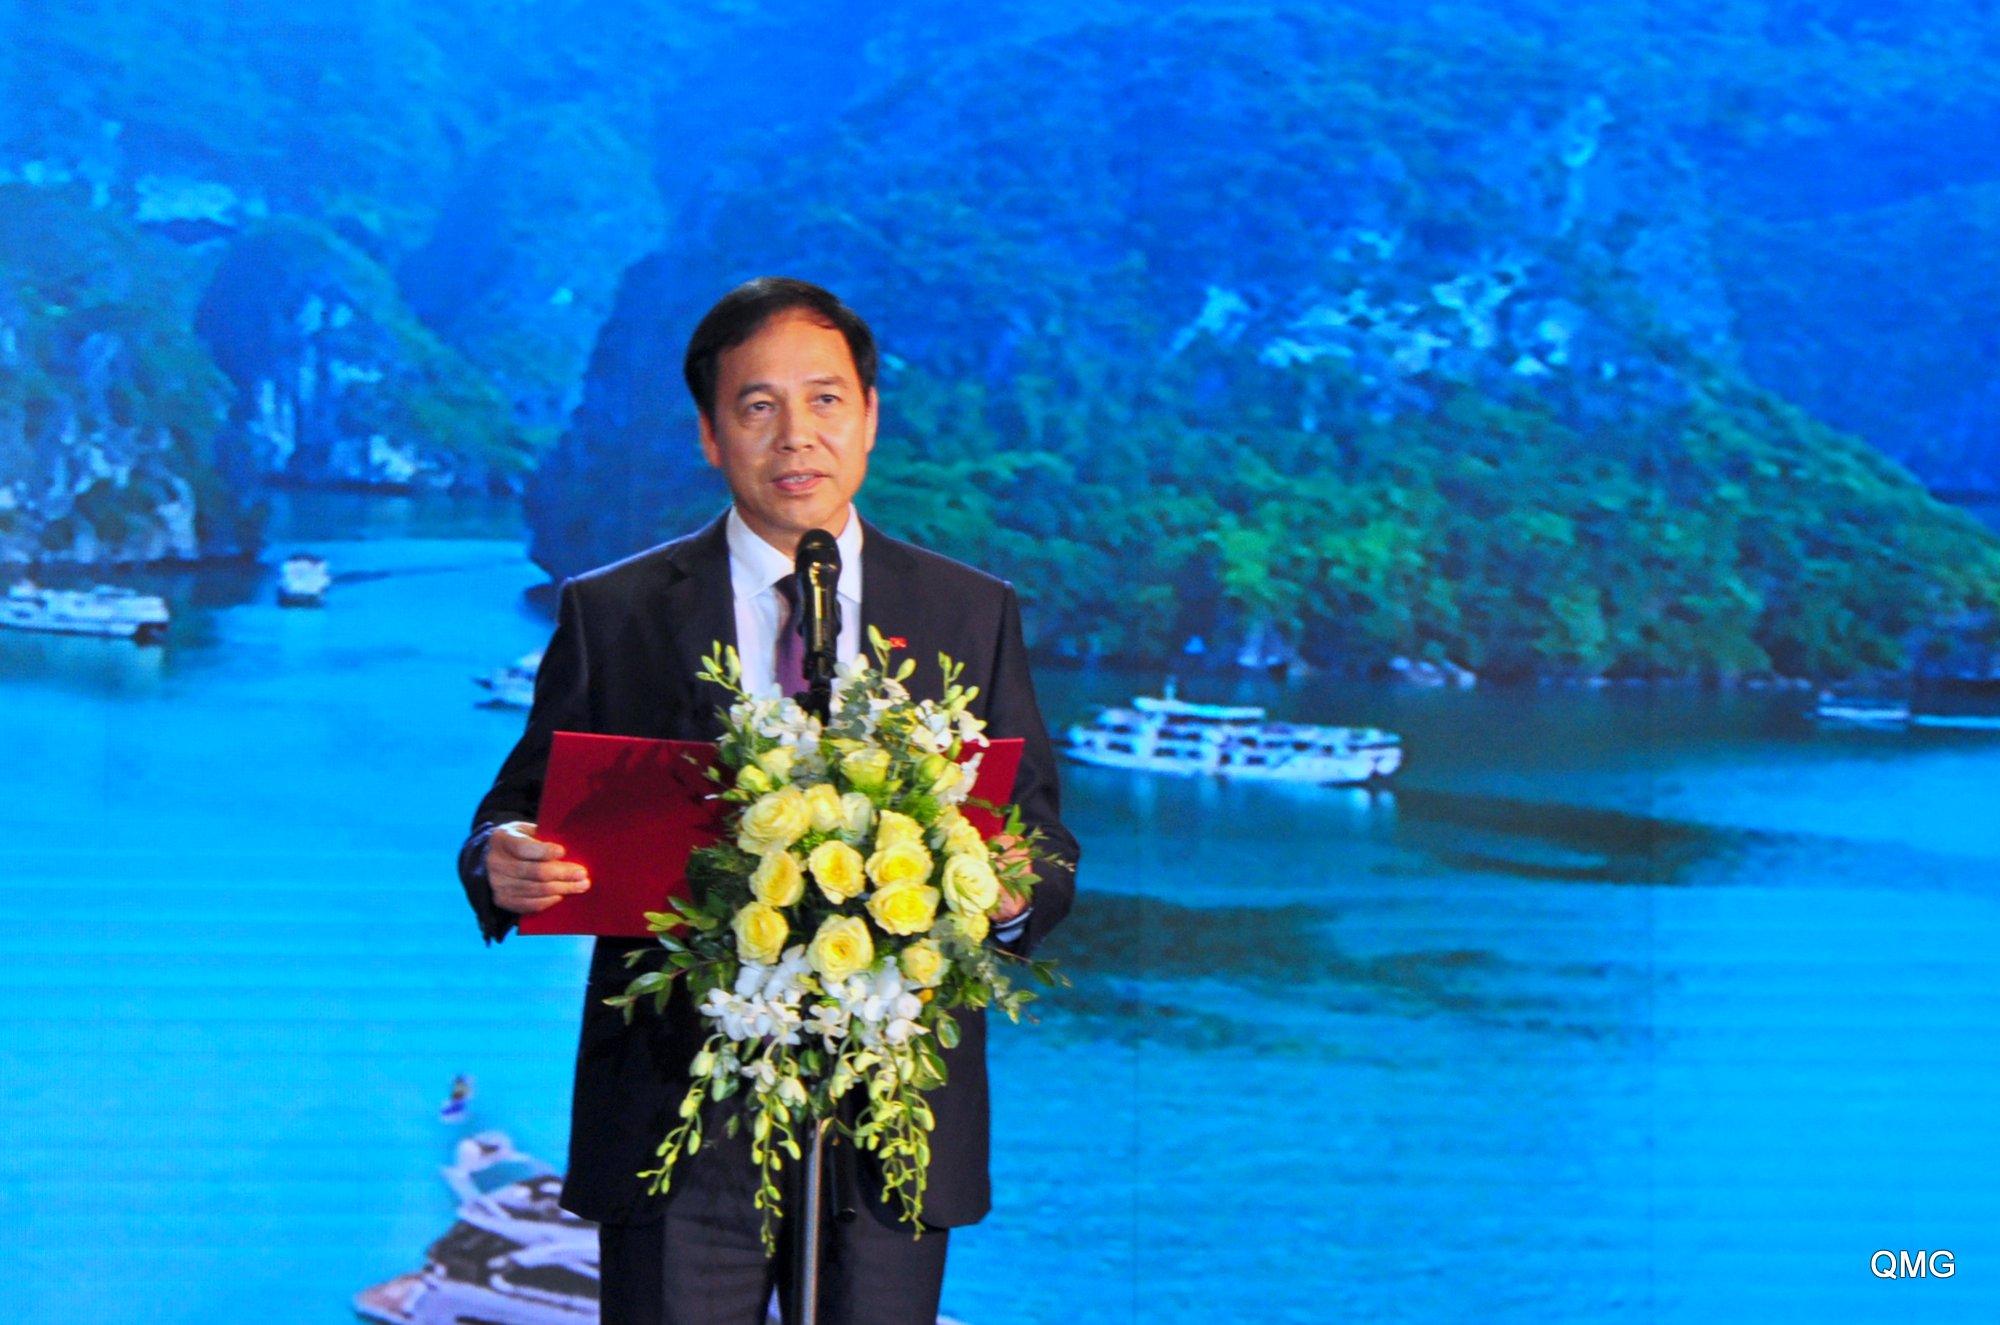 Đồng chí Đặng Huy Hậu, Phó Chủ tịch Thường trực UBND tỉnh phát biểu khai mạc chương trình nghệ thuật.